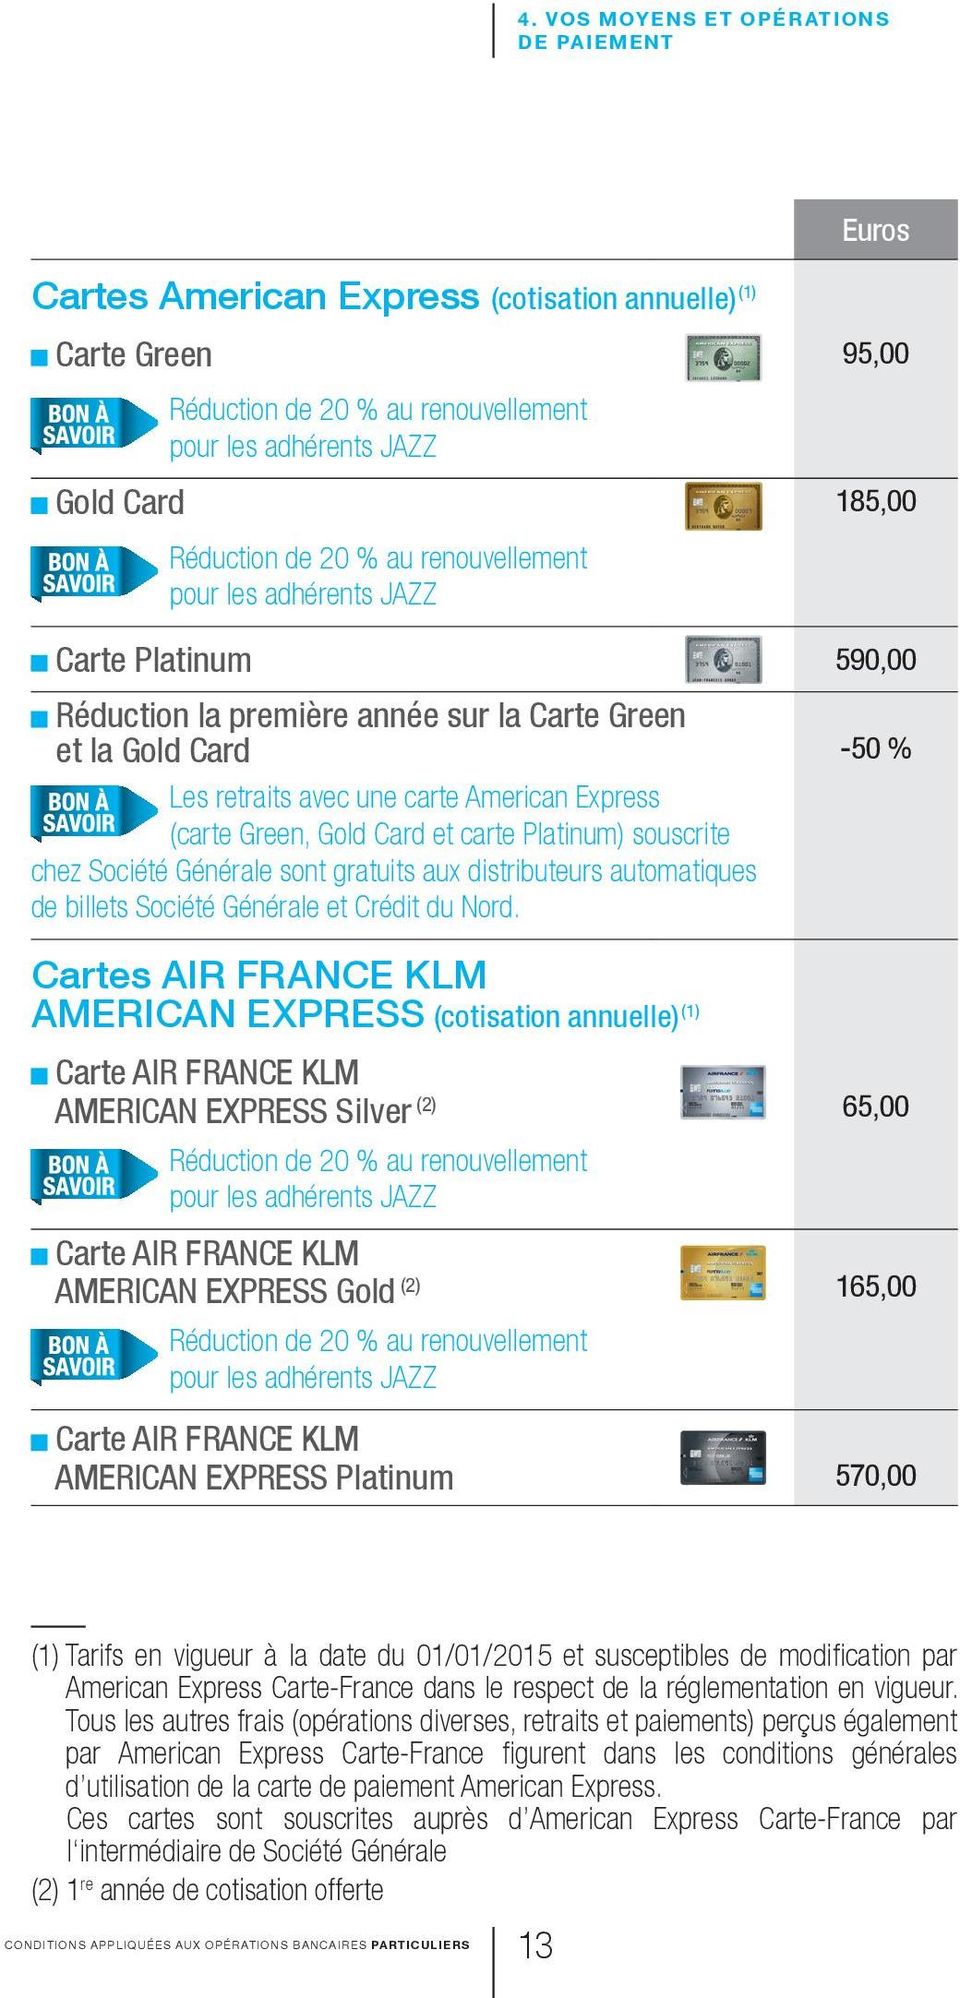 Card et carte Platinum) souscrite chez Société Générale sont gratuits aux distributeurs automatiques de billets Société Générale et Crédit du Nord.